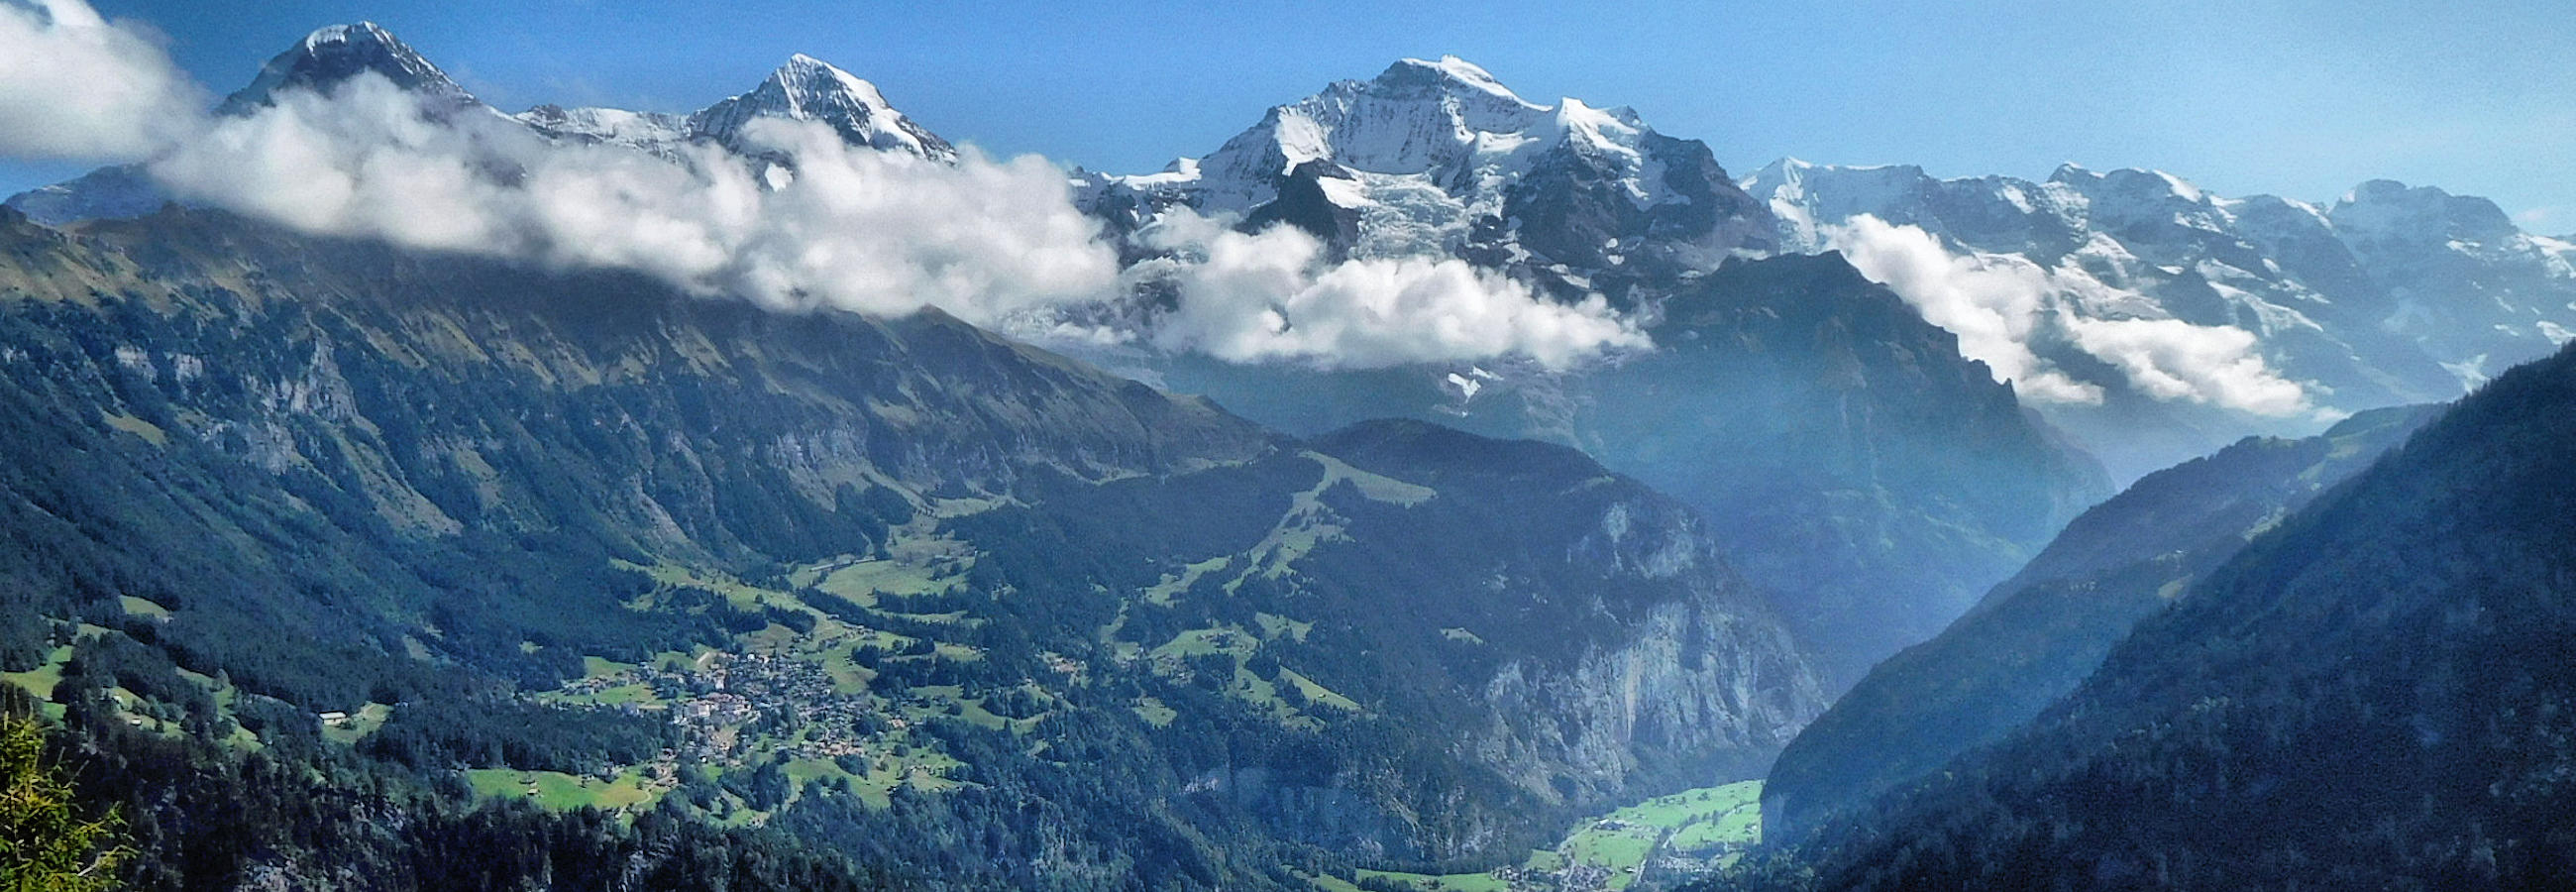 Switzerland Jungfrau Hiking Vacation